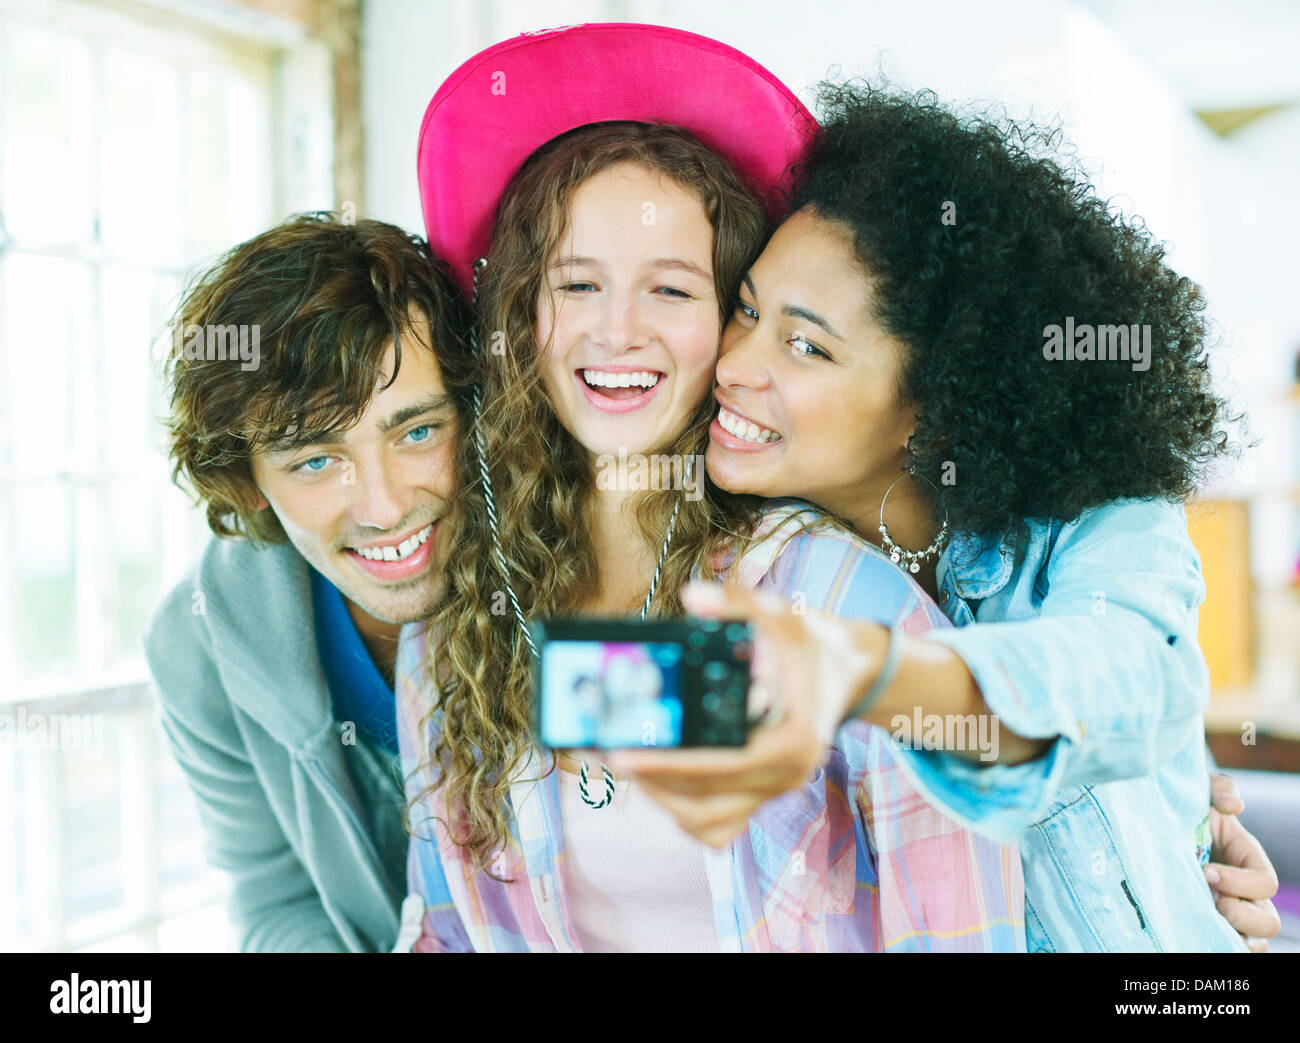 Amigos tomando imagen juntos en interiores Foto de stock